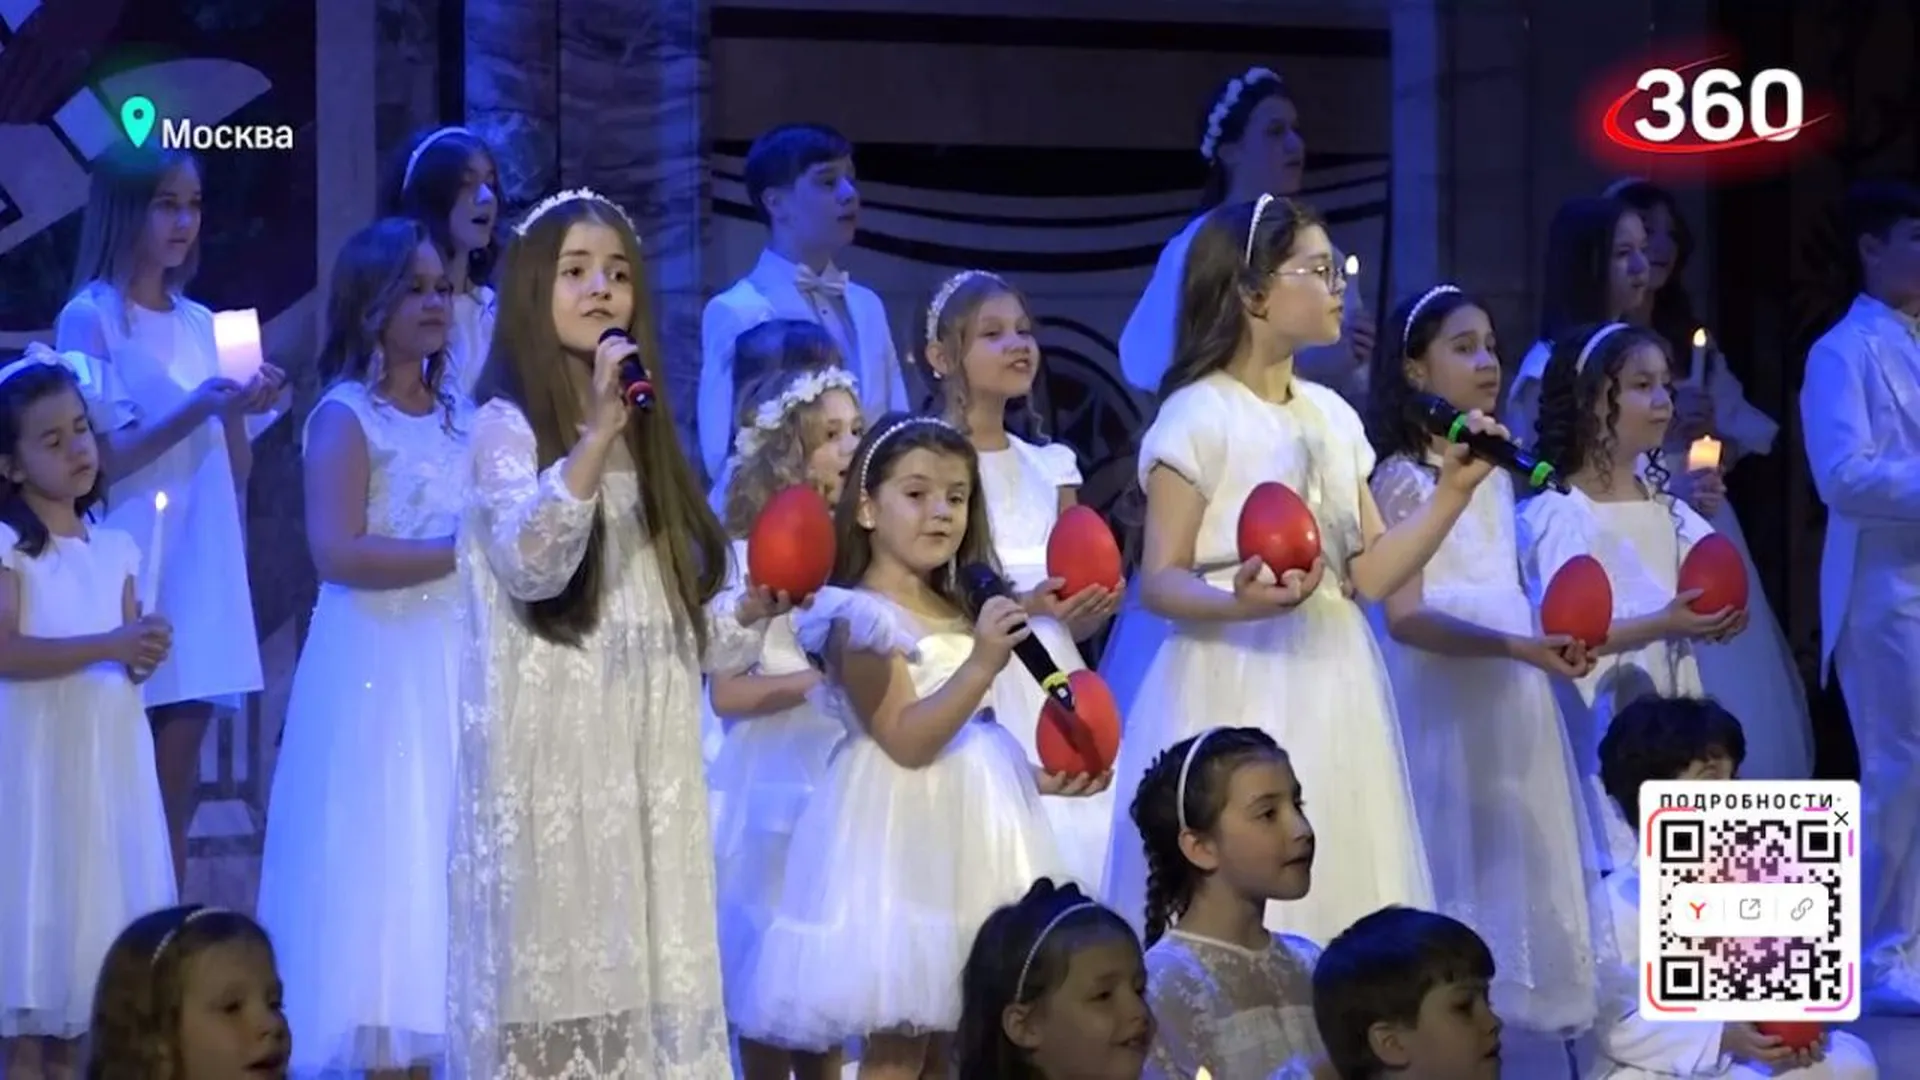 «Пасхальная радость». В храме Христа Спасителя прошел благотворительный концерт для детей